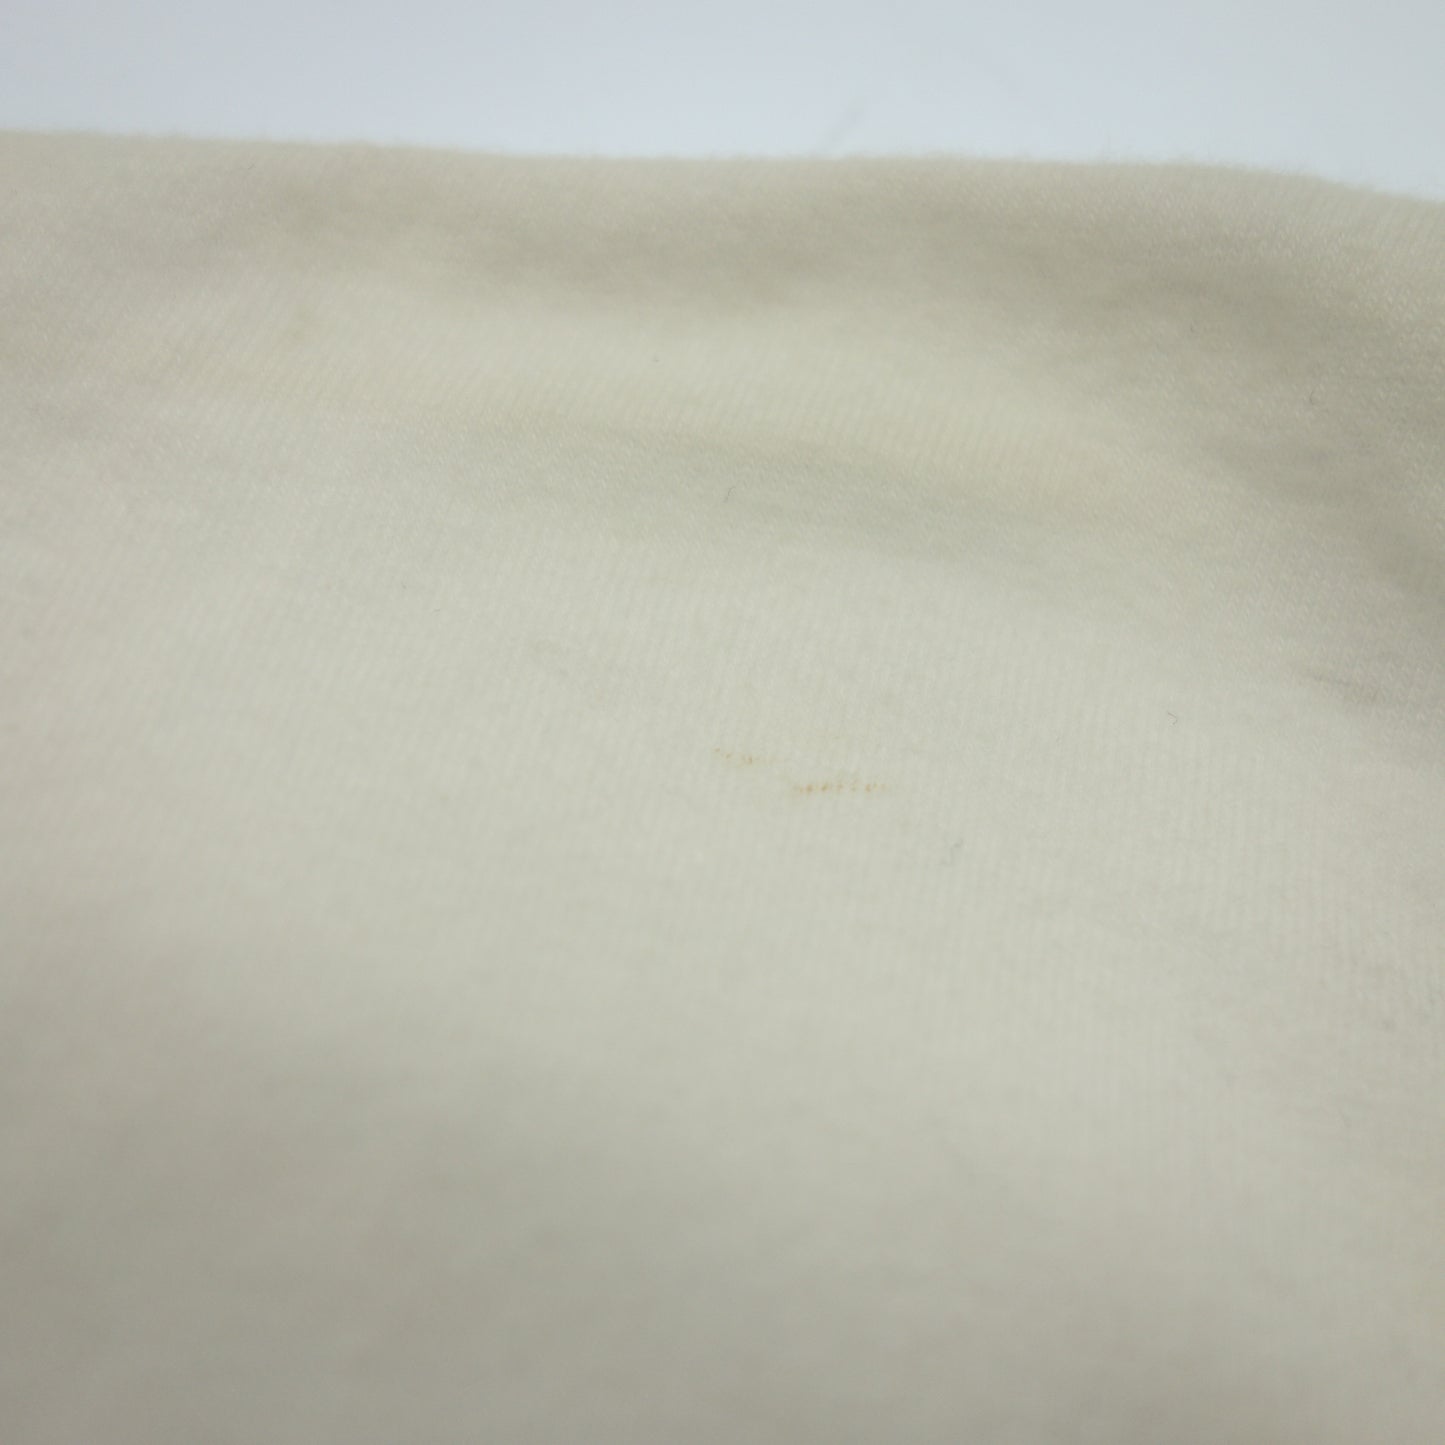 Used ◆ Emporio Armani Undershirt Size XL White Men's EMPORIO ARMANI [AFB12] 